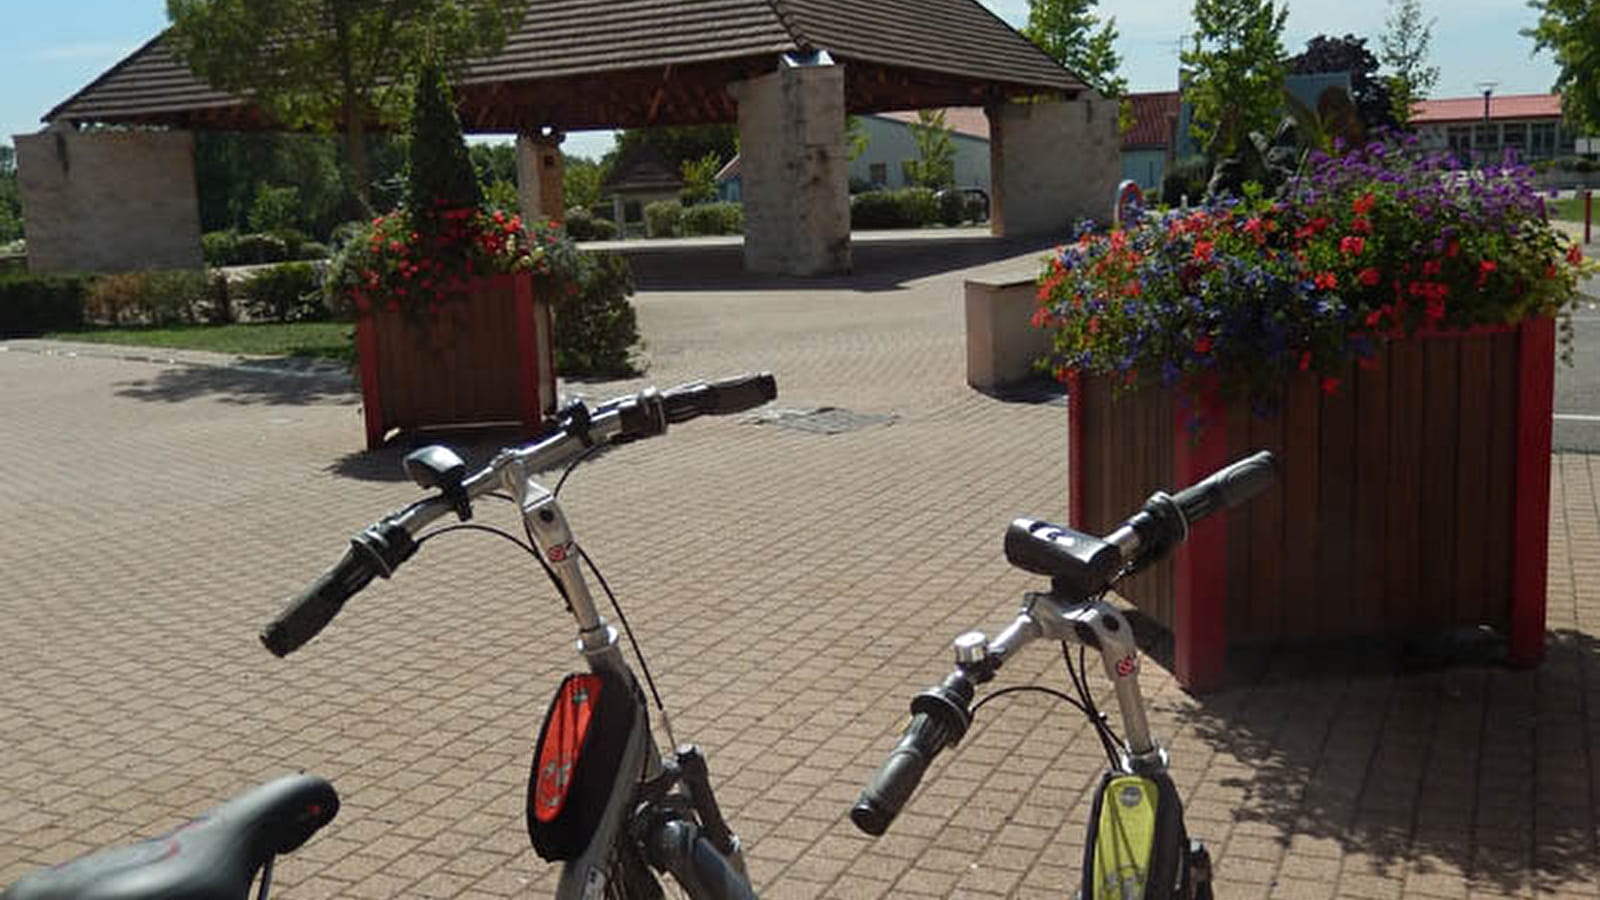 La Porte Verte - Location de vélos